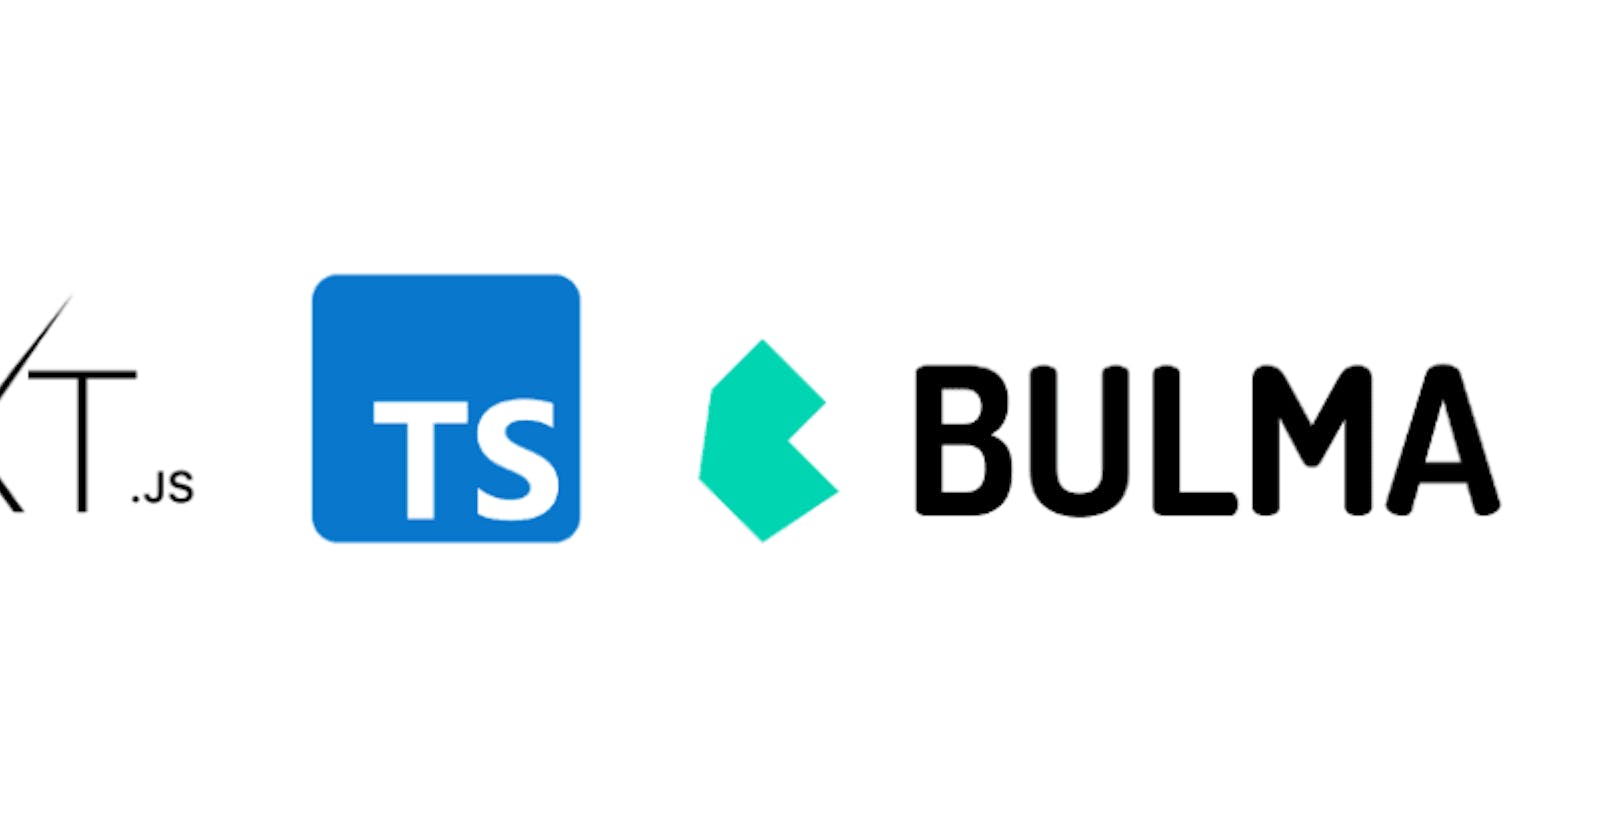 Next.js with Bulma in Typescript boilerplate